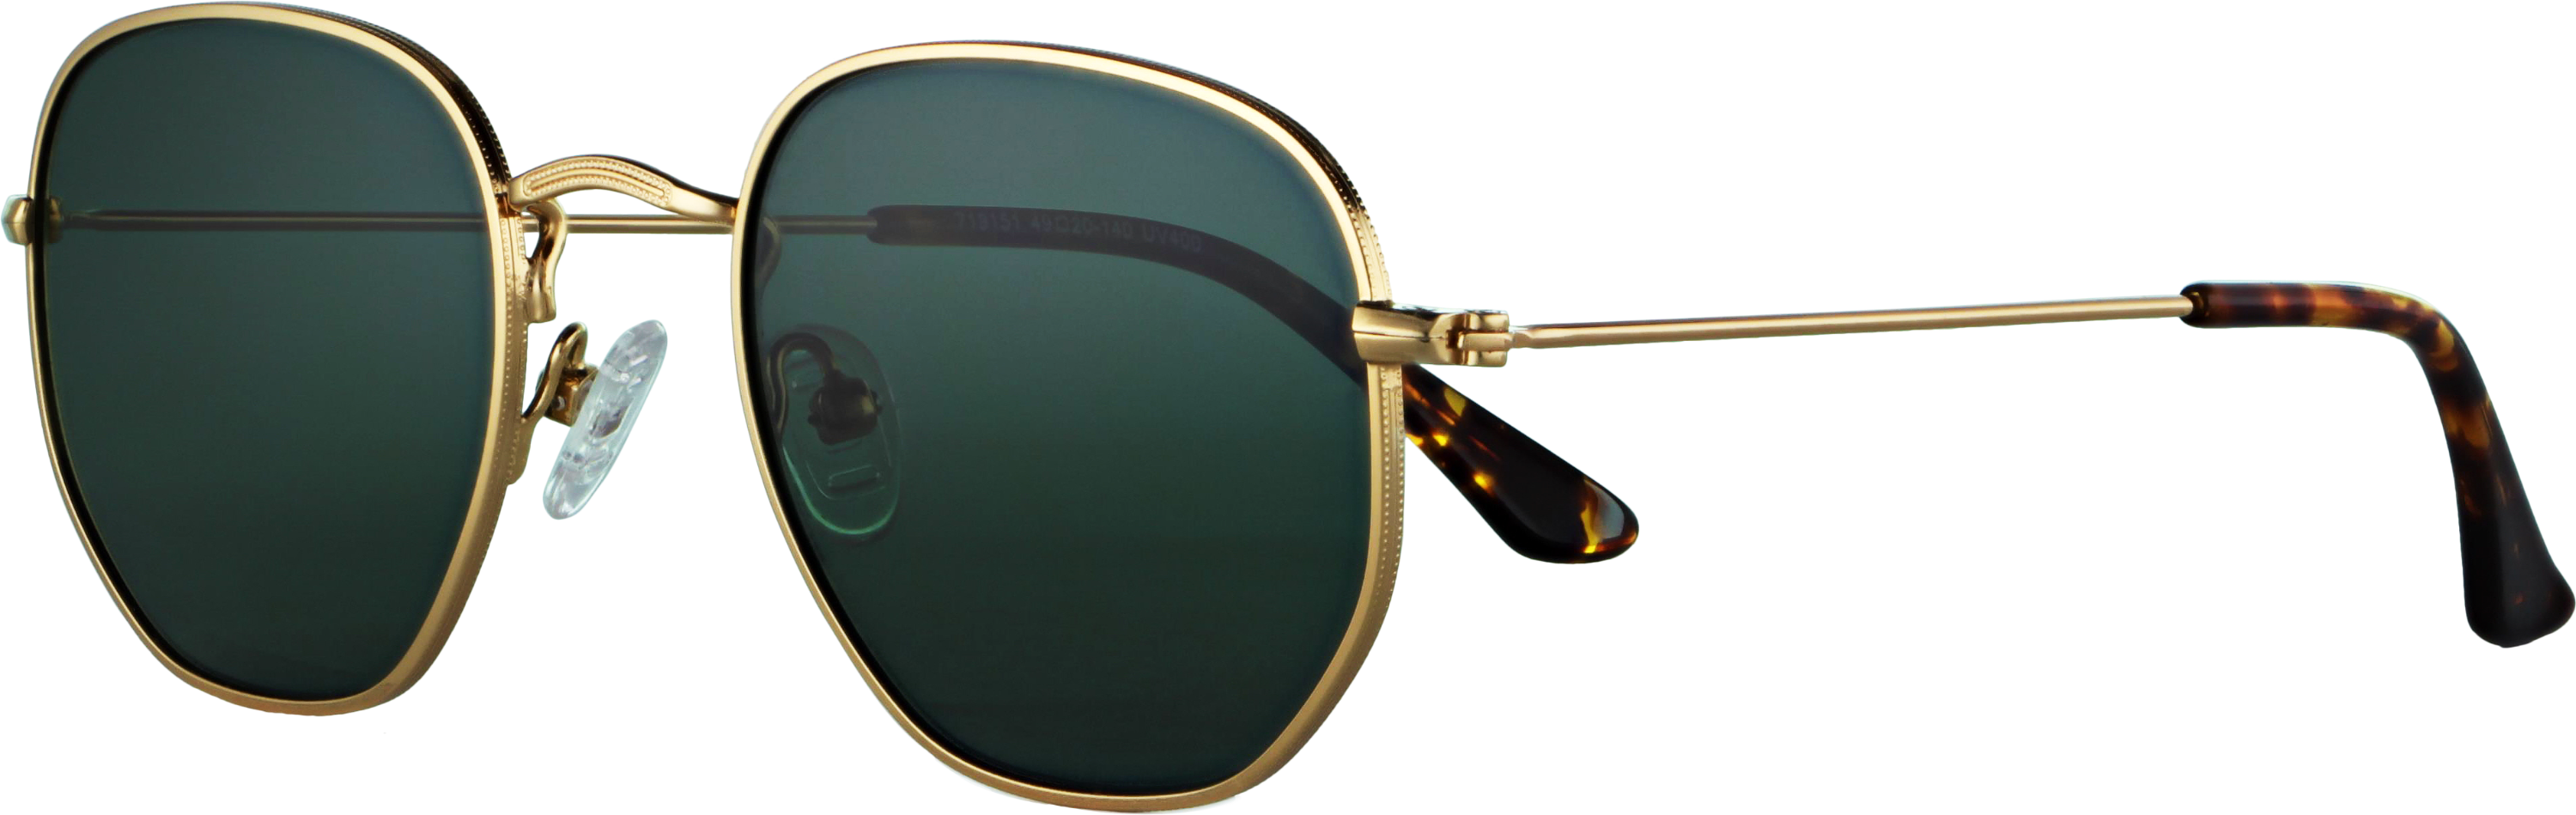 Das Bild zeigt die Sonnenbrille 719151 von der Marke Abele Optik in gold.